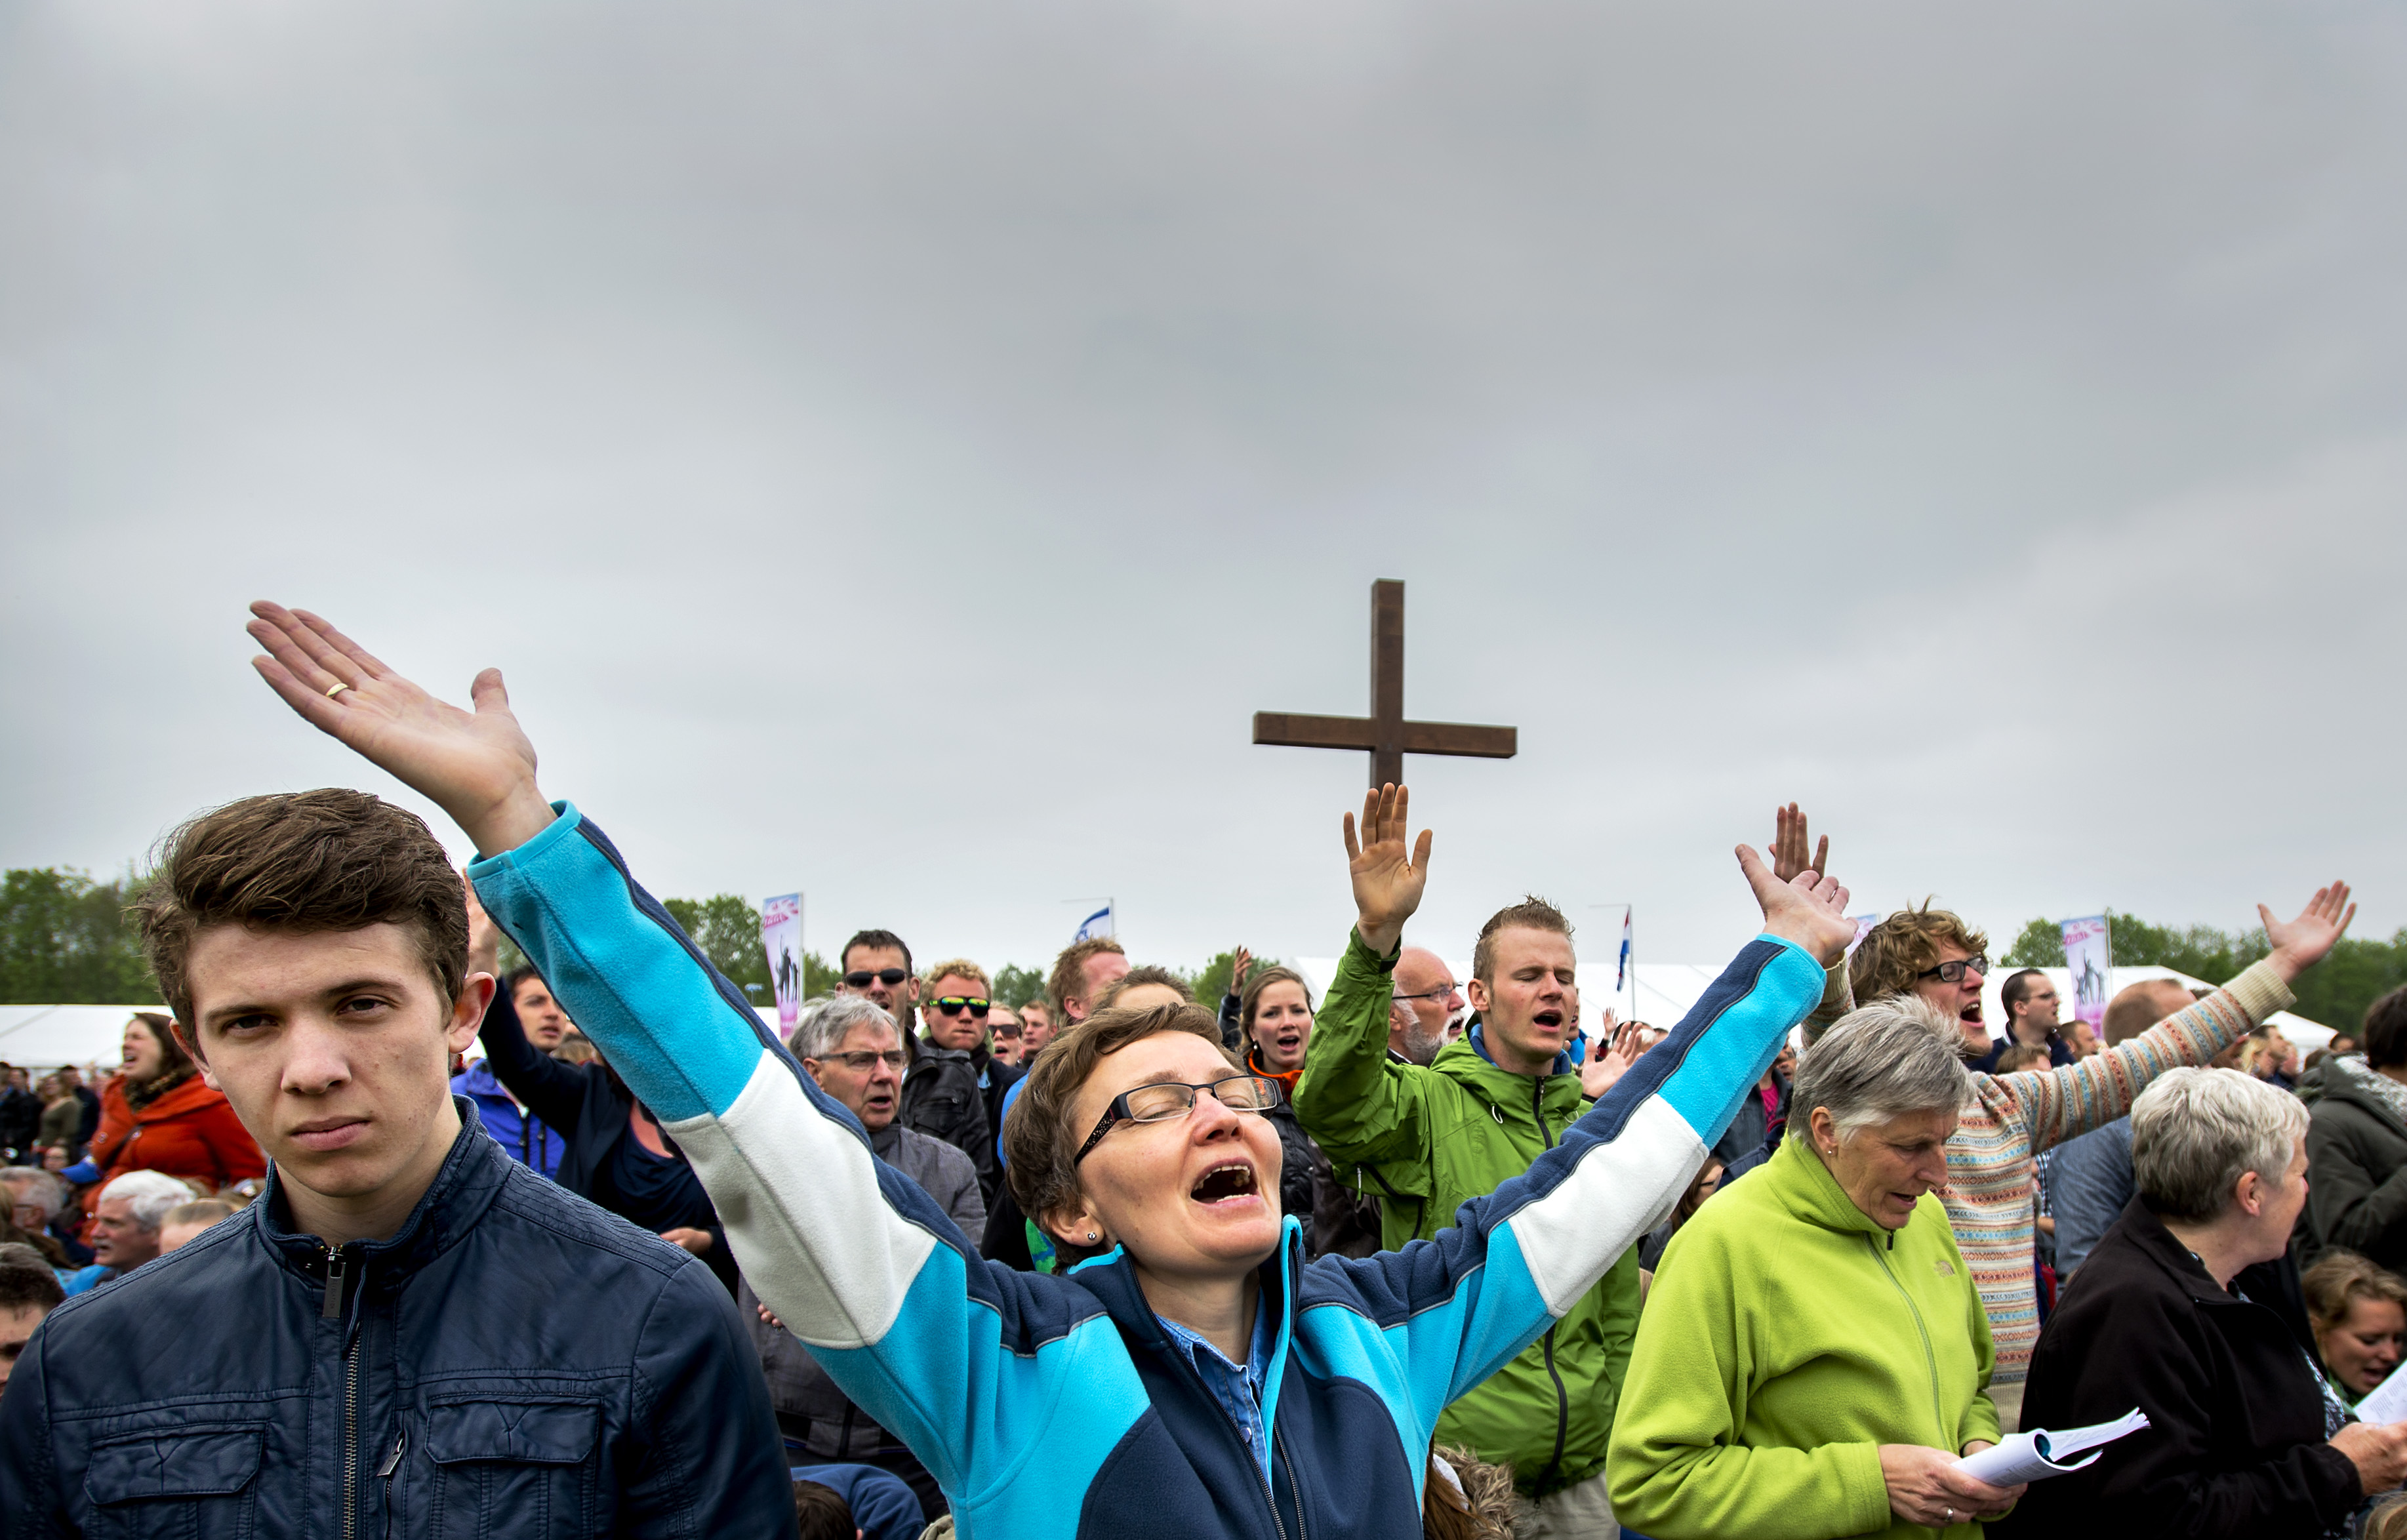 Christenen bidden, preken en zingen tijdens Pinksteren samen op het festivalterrein van Walibi in Biddinghuizen. Het is de 43e keer dat de pinksterconferentie Opwekking wordt gehouden. Vorig jaar kwamen er er ruim 50.000 mensen op het evenement af. ANP ROBIN VAN LONKHUIJSEN